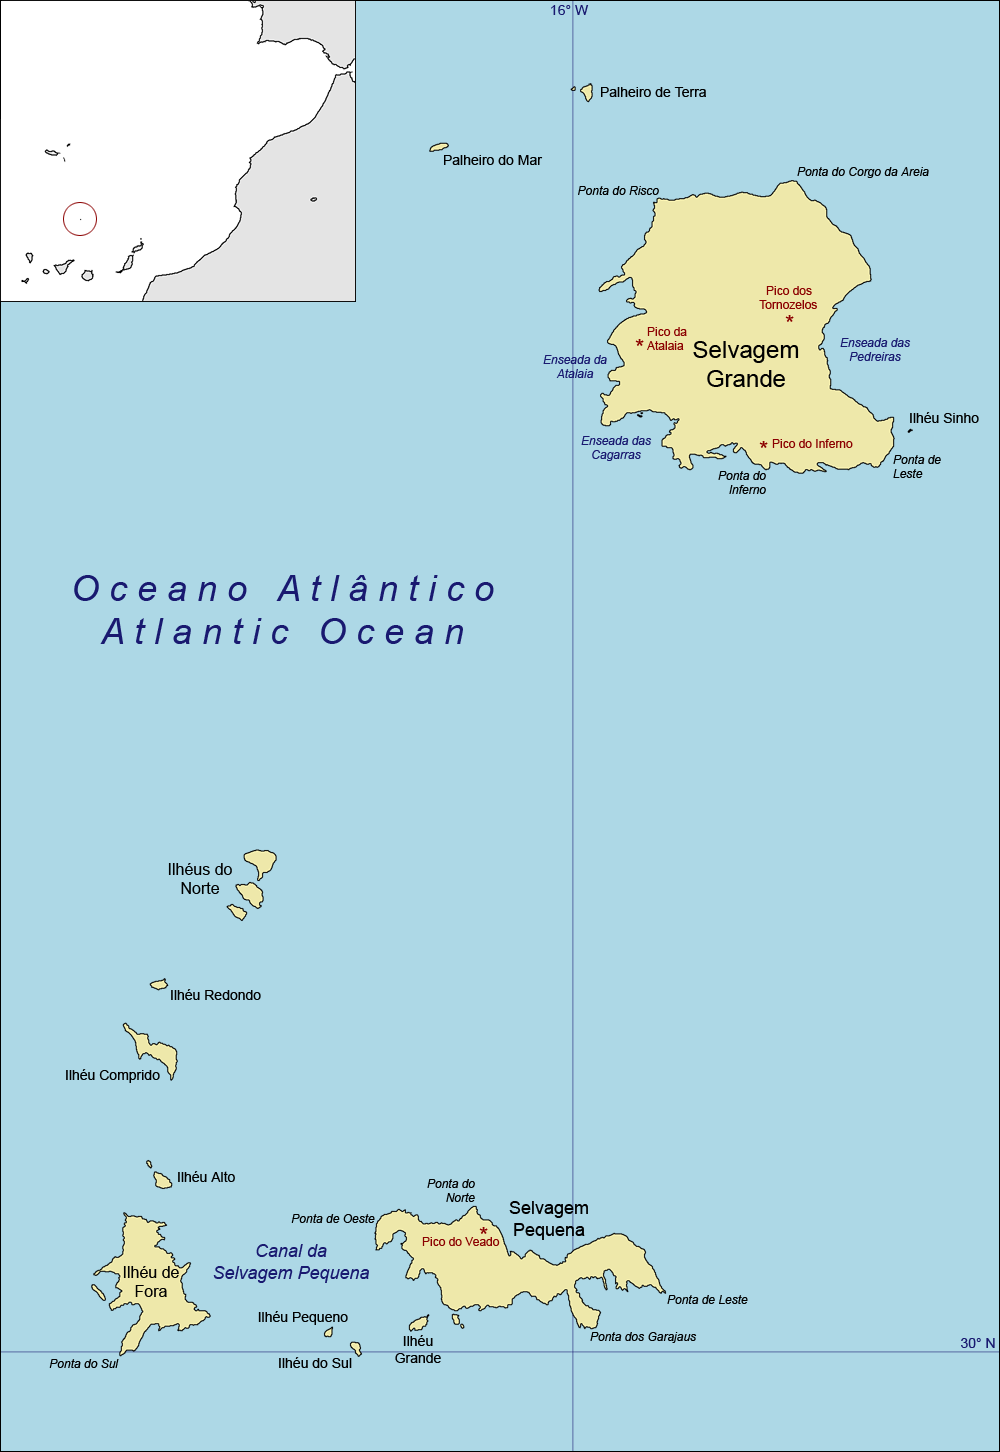 Η αλιεία στη Μαδέρα Γραφική παράσταση 3: Νησιά Σελβάζενς Η Ισπανία και η Πορτογαλία υπέγραψαν τον Φεβρουάριο του 1976 τις συμφωνίες Guarda σχετικά με την οριοθέτηση των χωρικών υδάτων και των